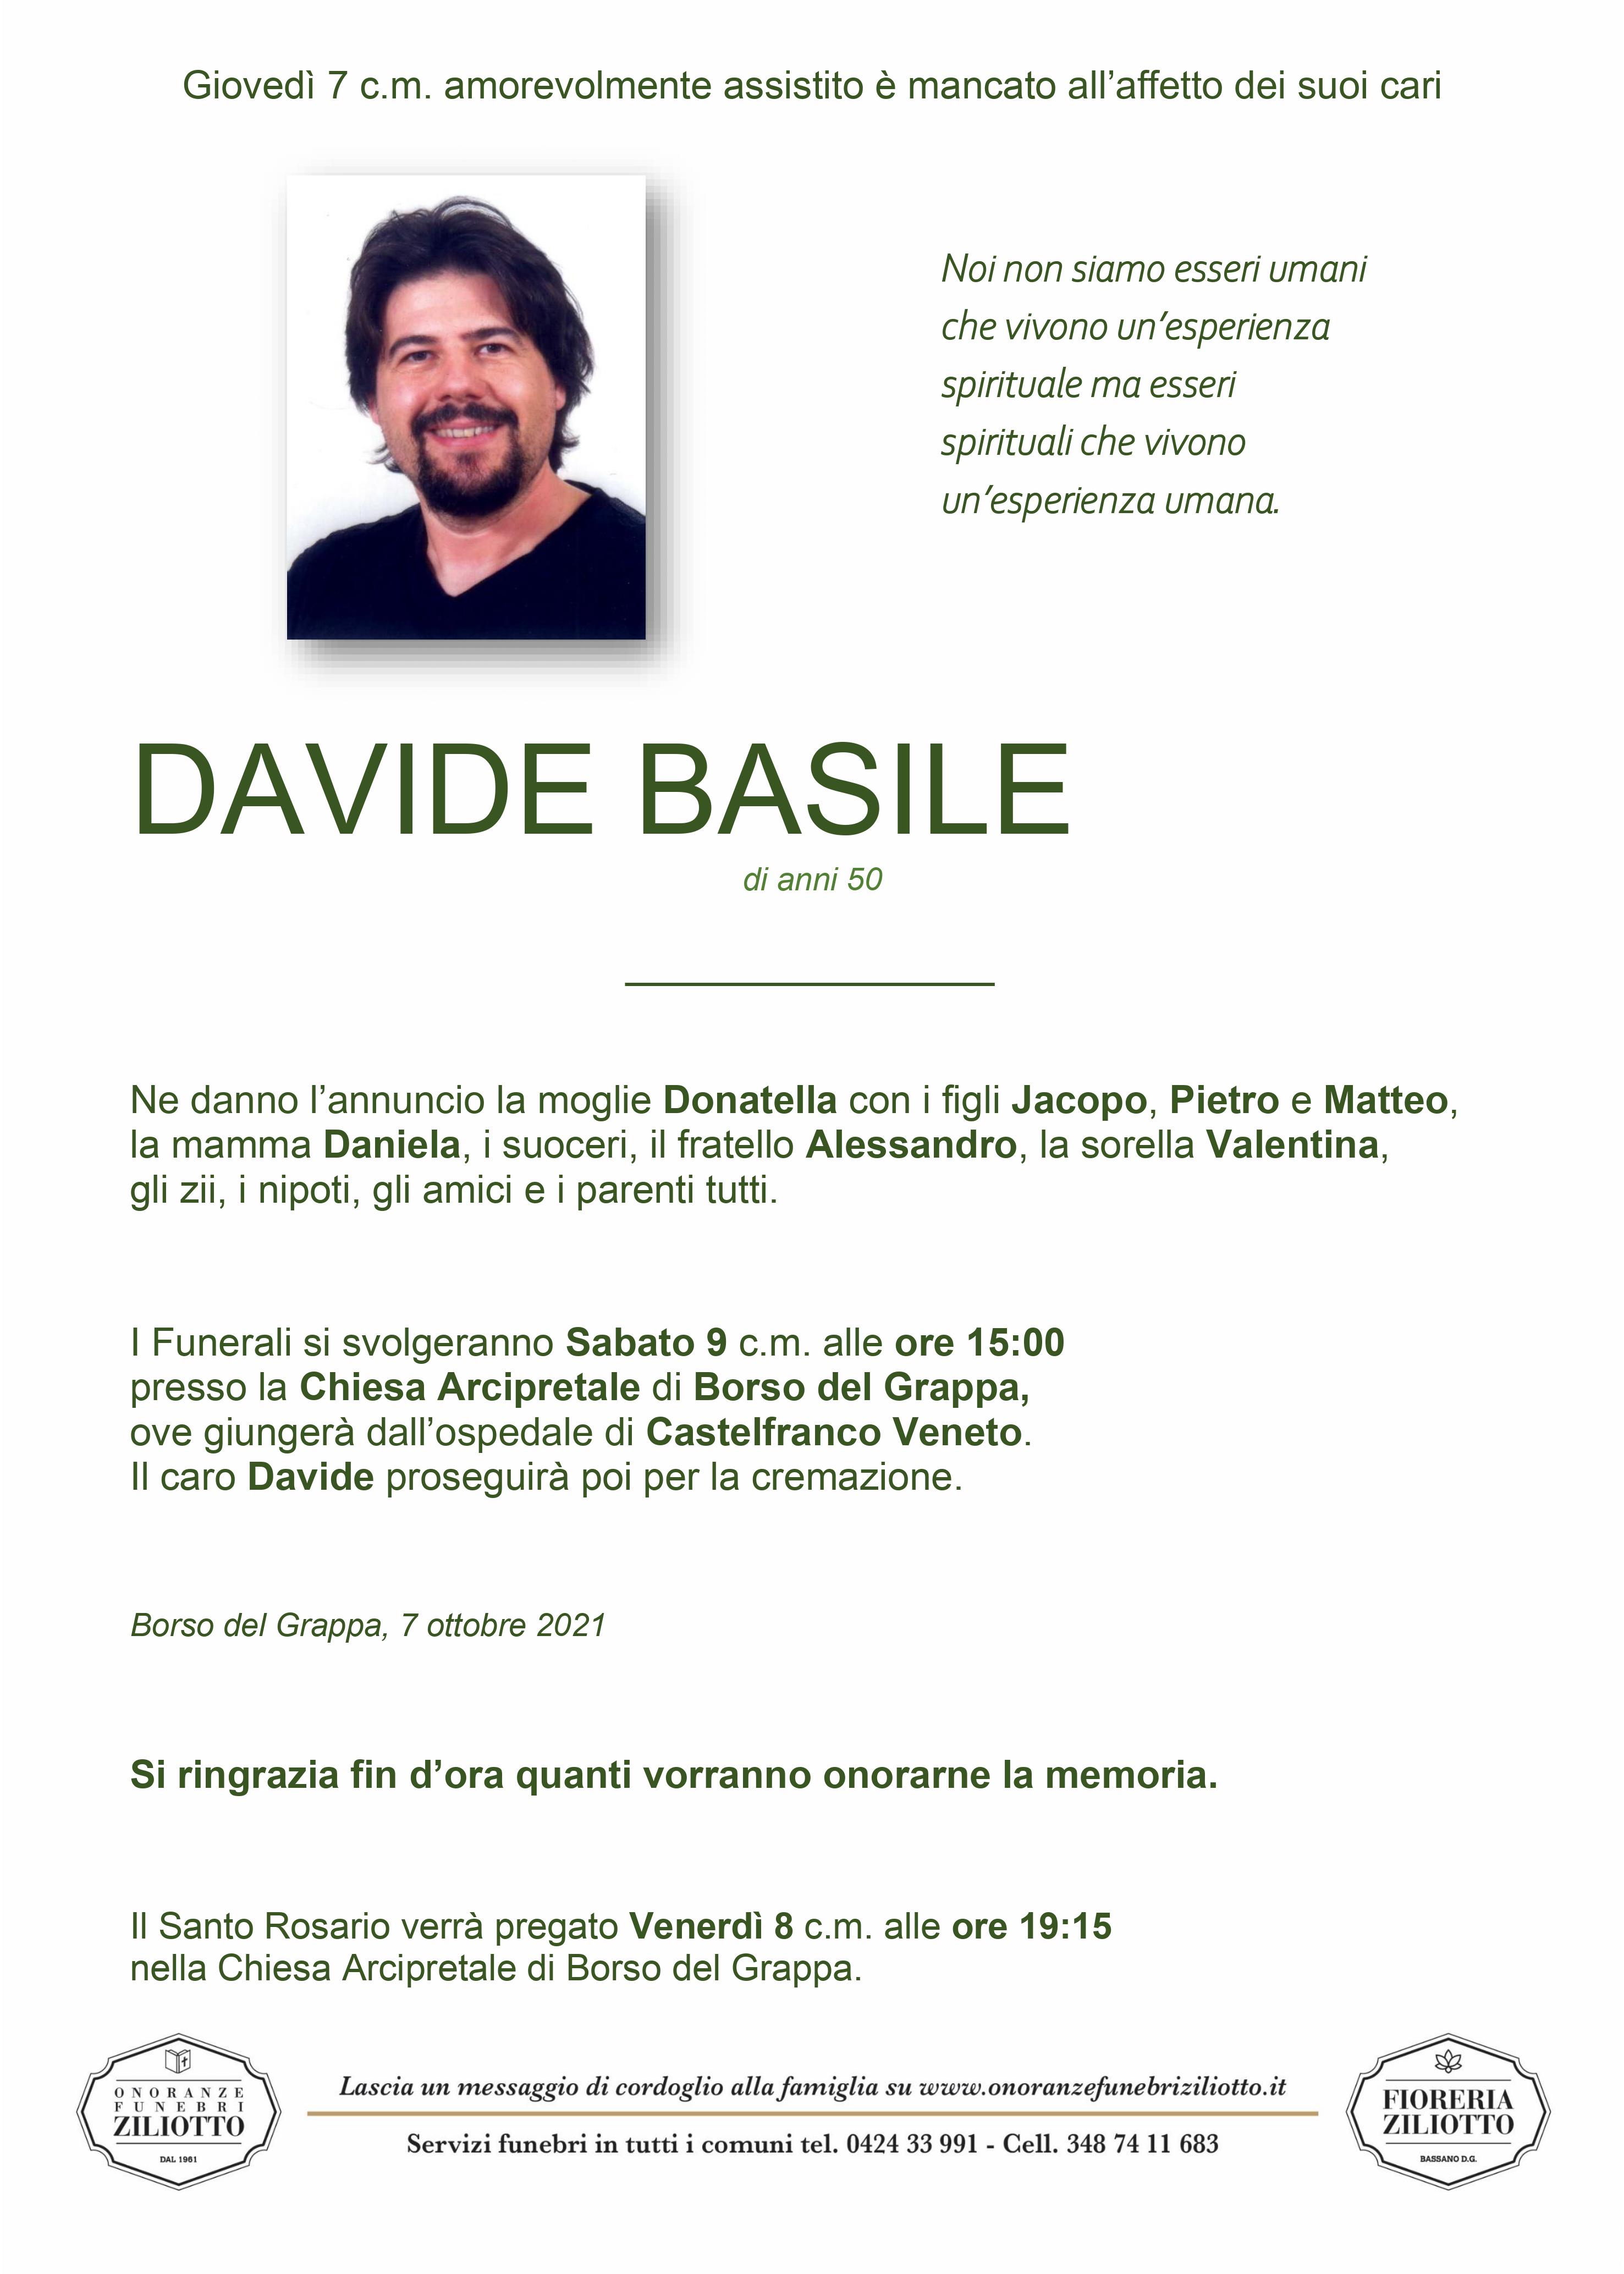 Davide Basile - 50 anni - Borso del Grappa